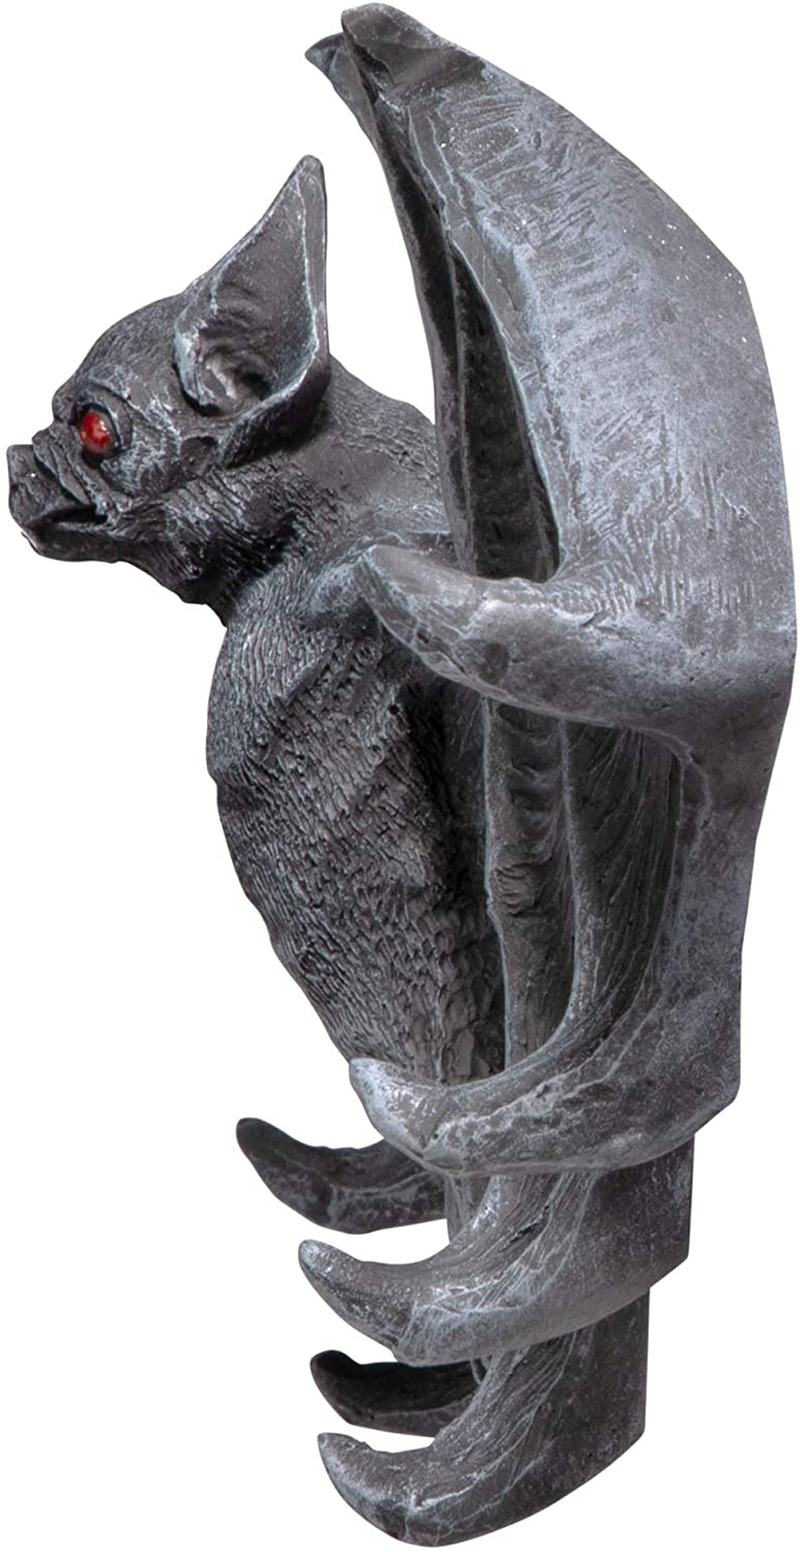 Key Hook Rack - Vampire Bat Key Holder Wall Sculpture: Large - Bat Figure - Halloween Bats Home & Garden > Decor > Artwork > Sculptures & Statues Design Toscano   